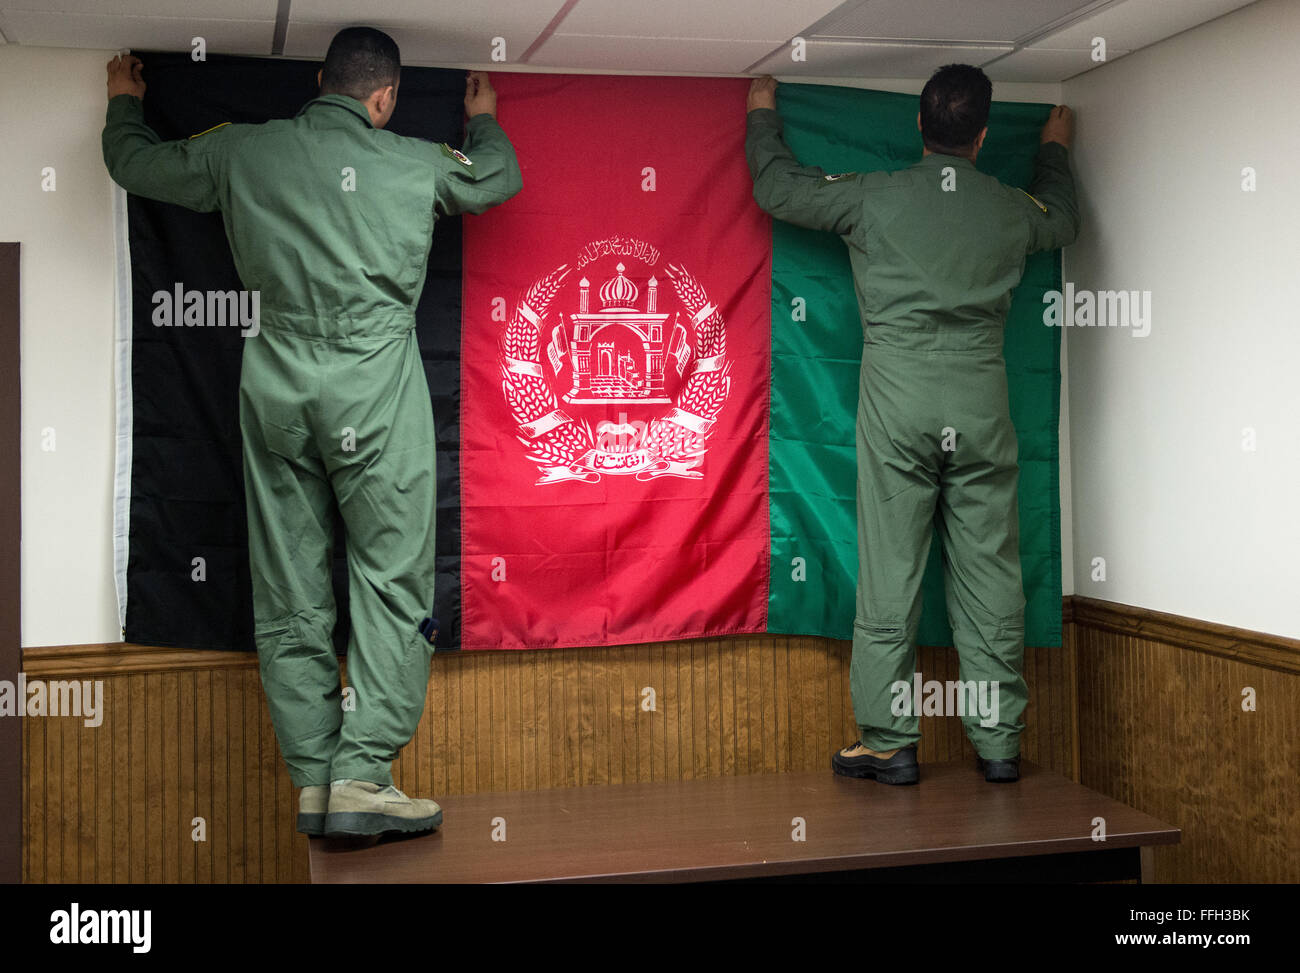 Afghanische Flugschüler hängen einer afghanischen Flagge an der Wand ihren Schulungsraum an der 81. Fighter Squadron, Moody Air Force Base, Georgia. Moody wurde ausgewählt, um das Training wegen der verfügbaren Luftraum, Flugplatz und geeignete Einrichtungen zu hosten. Stockfoto